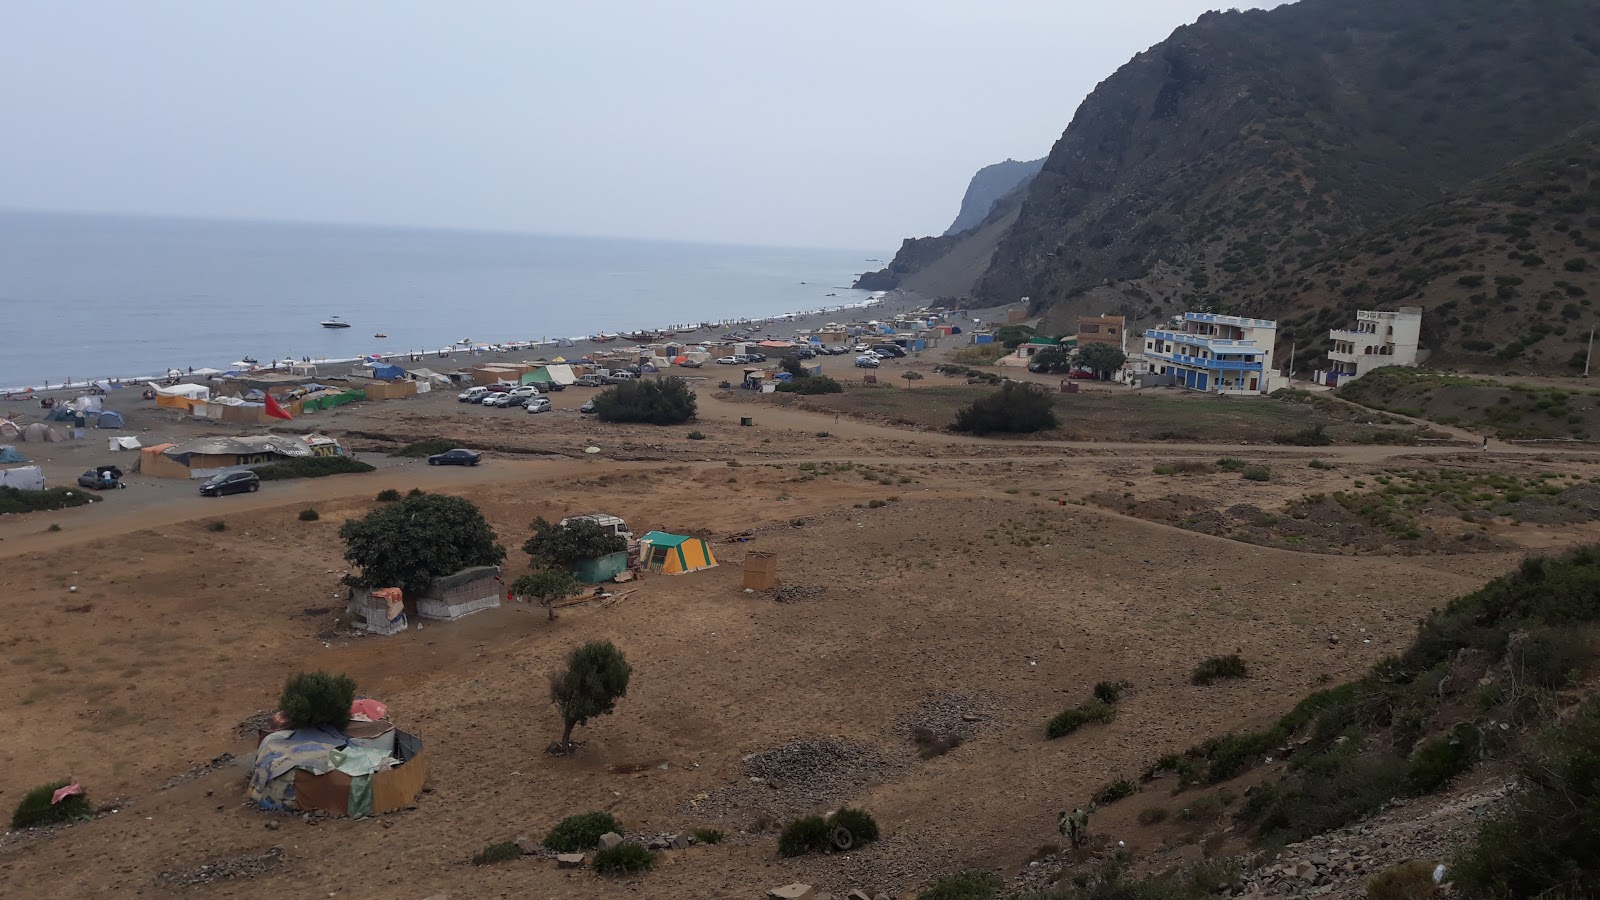 Plage Beni Baroun'in fotoğrafı geniş plaj ile birlikte